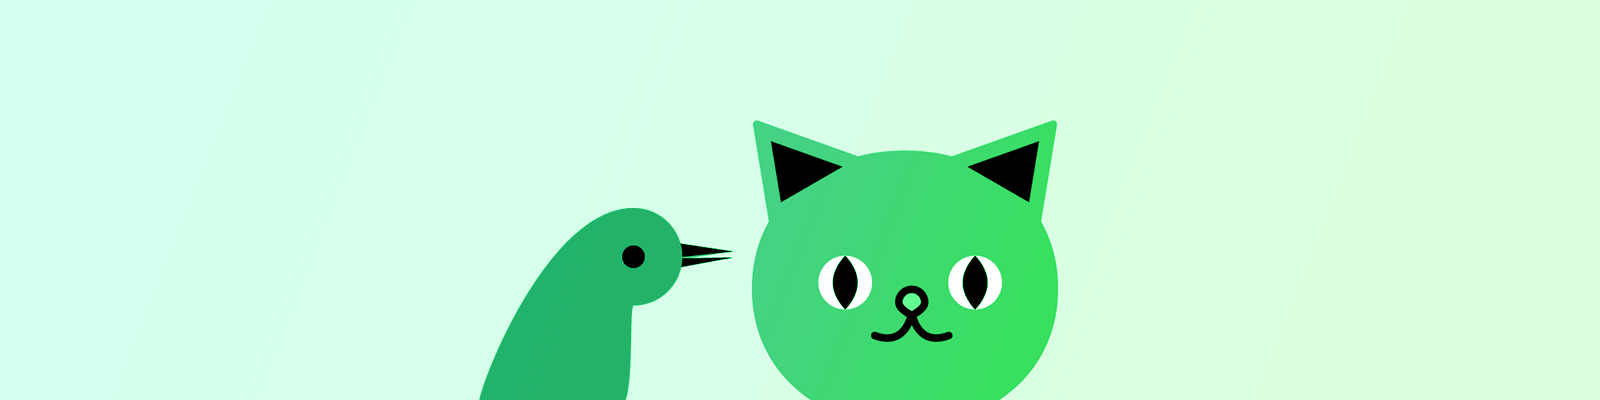 گربه پرنده سبز چشمک زن